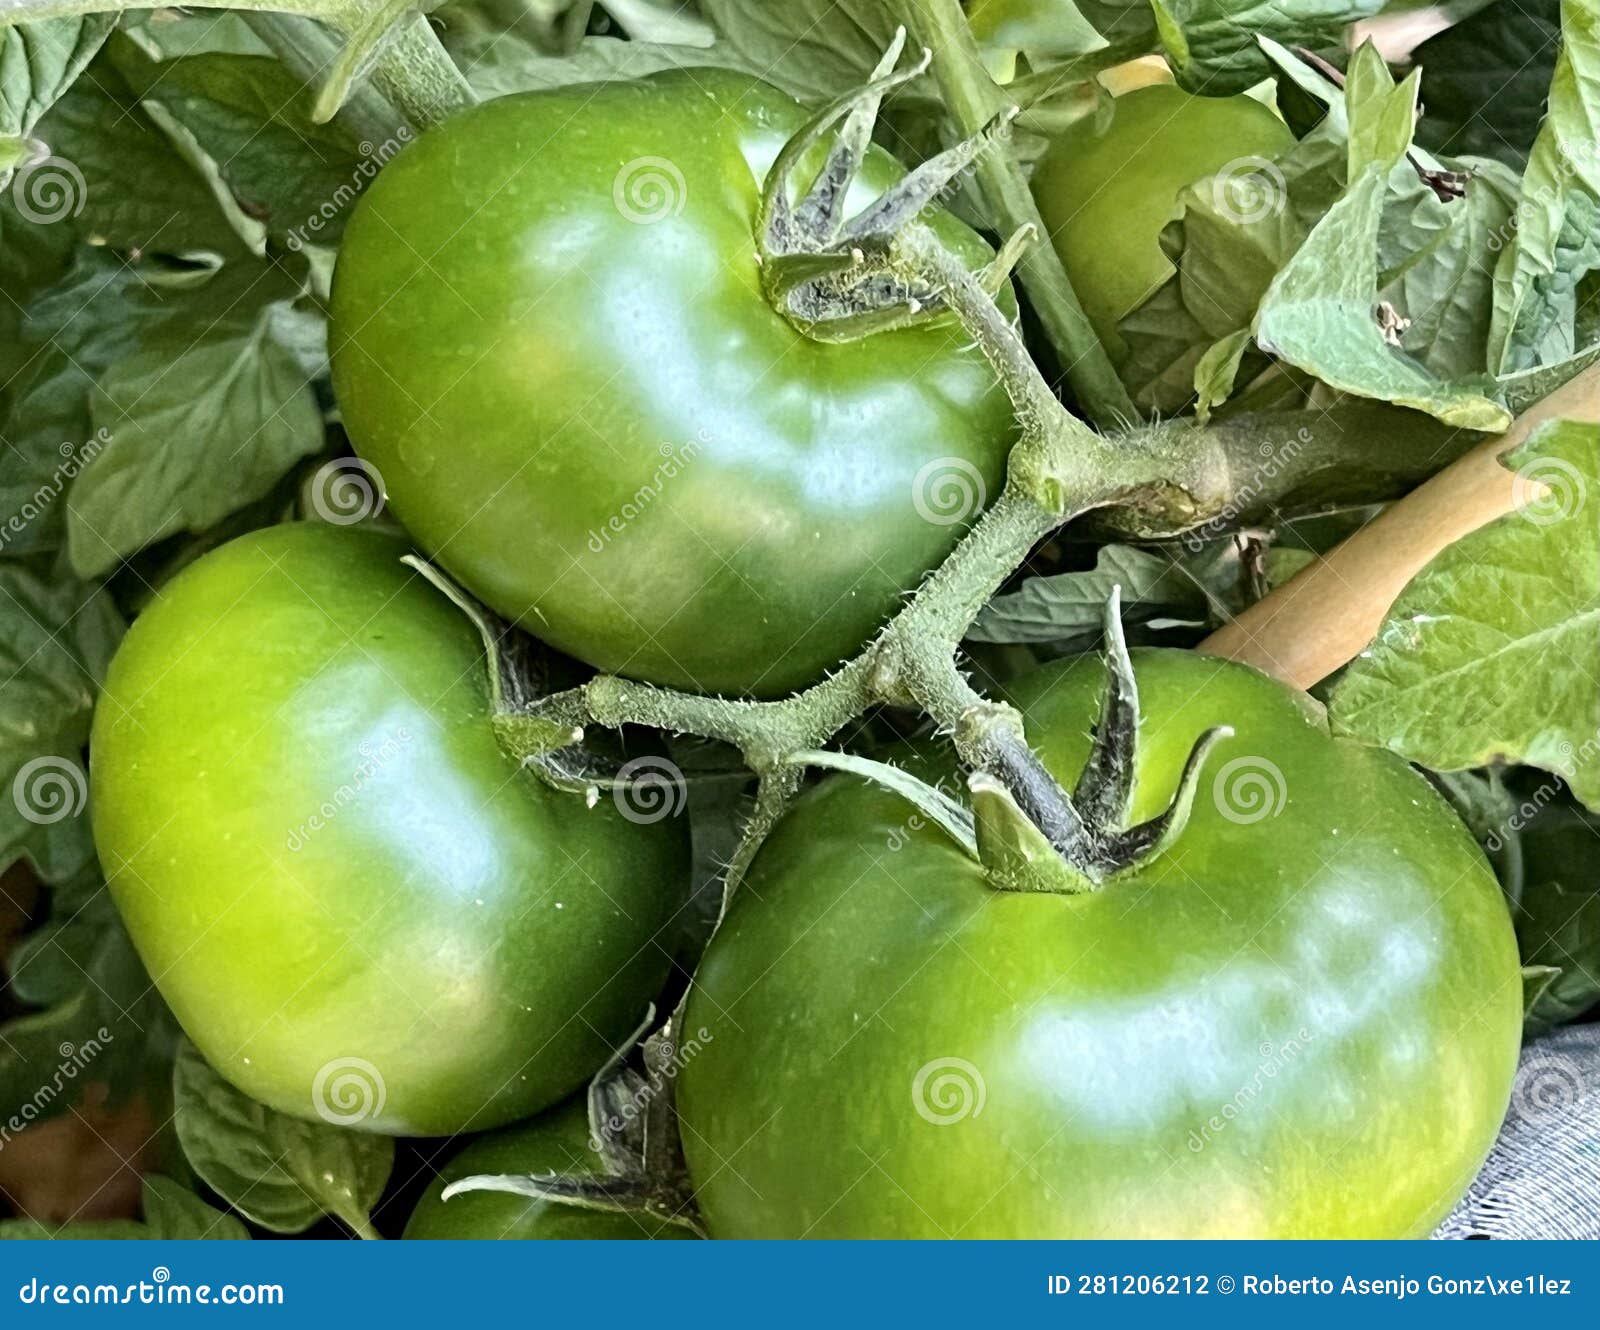 tomates verdes creciendo y madurando en la planta